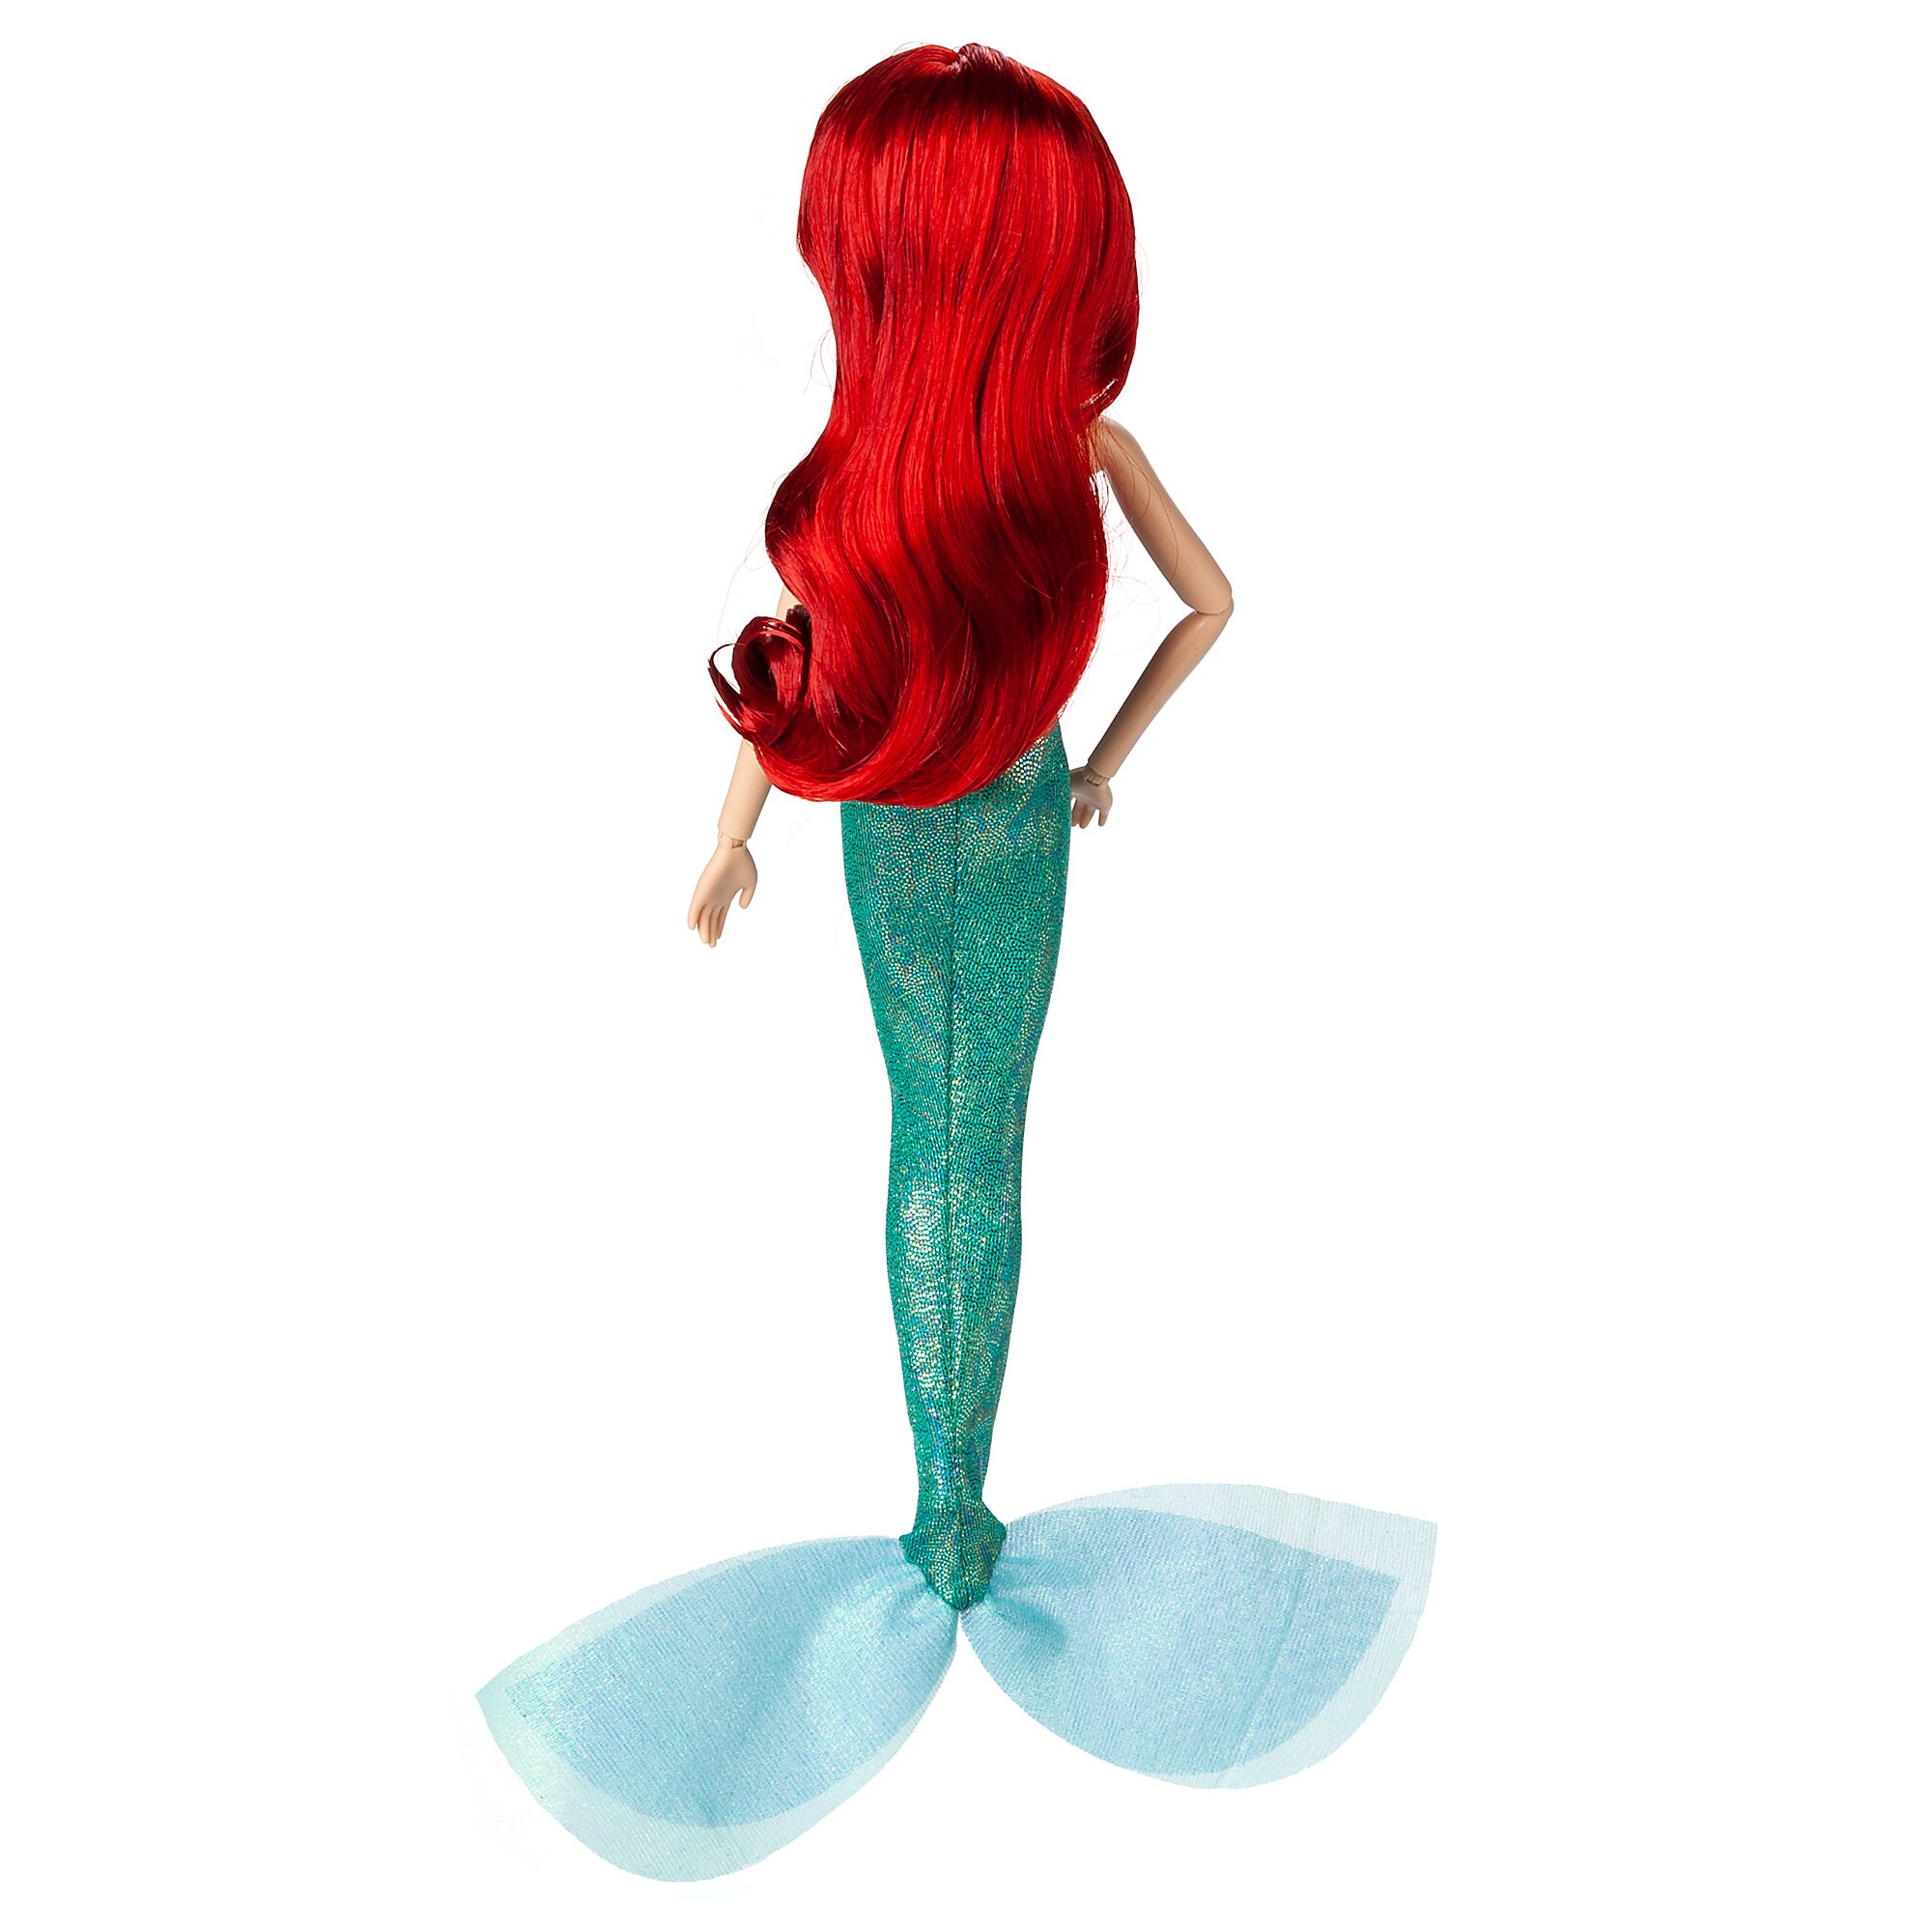 Ariel Hair Play Doll